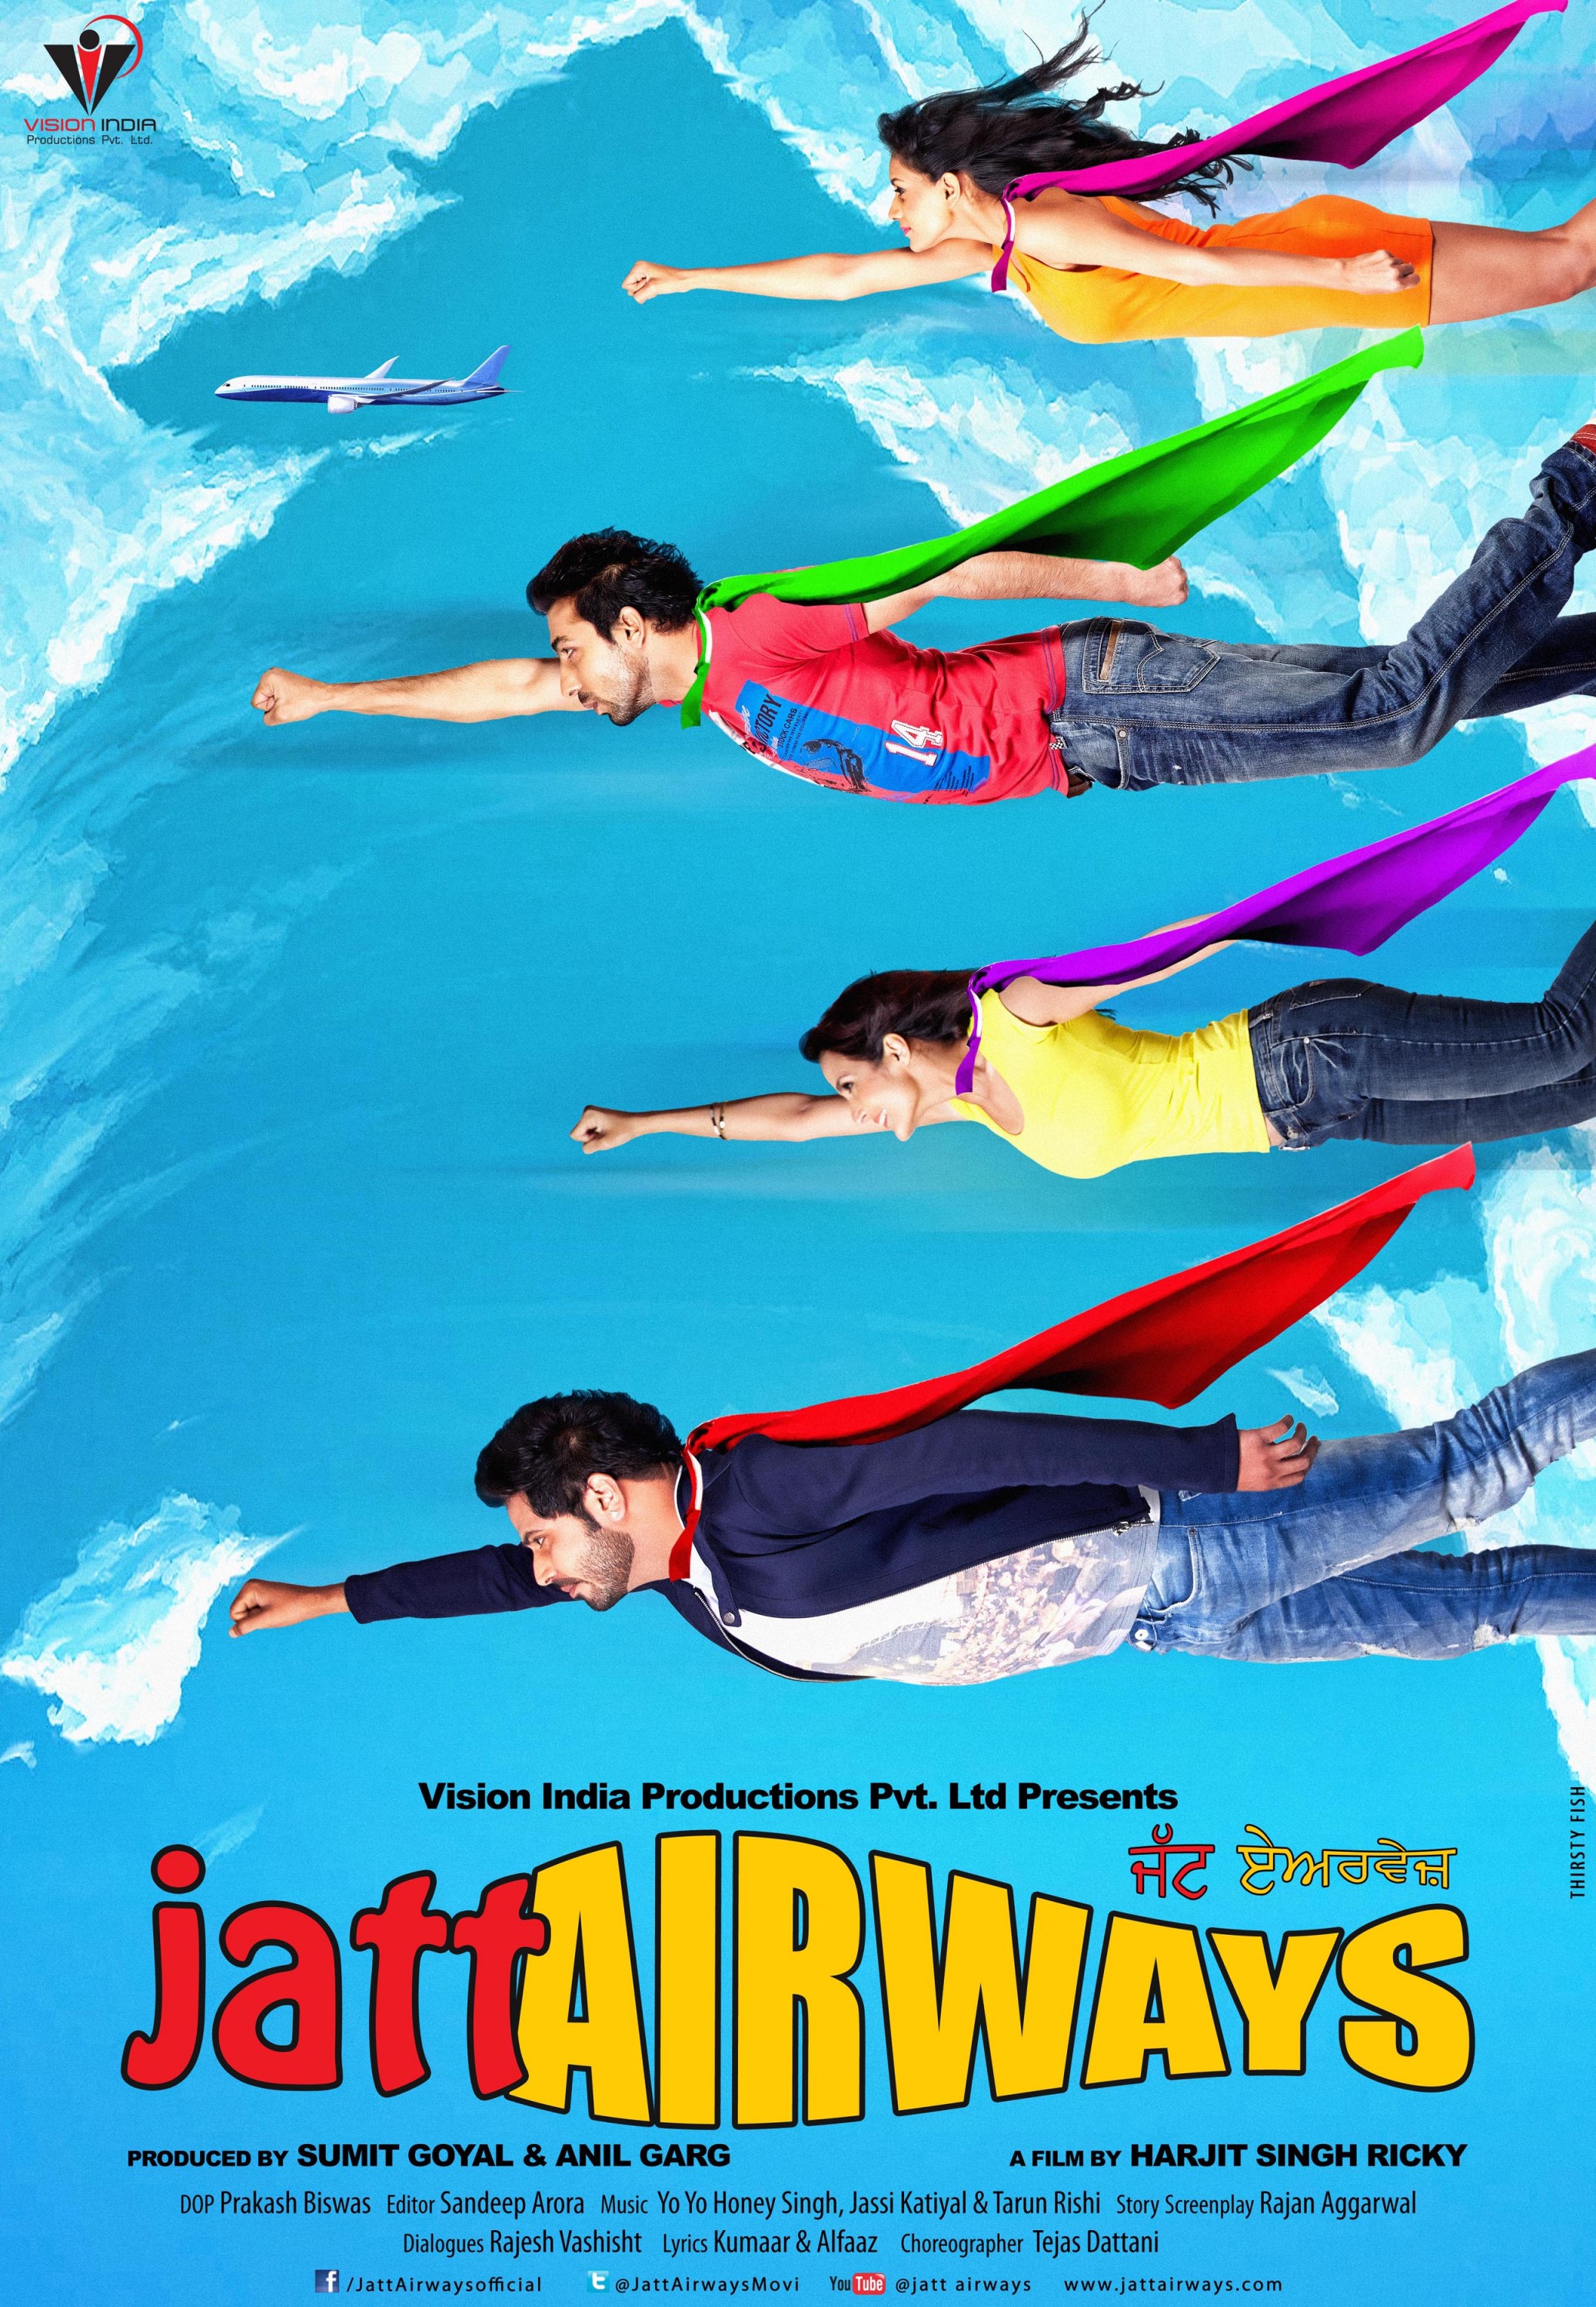 Mega Sized Movie Poster Image for Jatt Airways (#2 of 8)